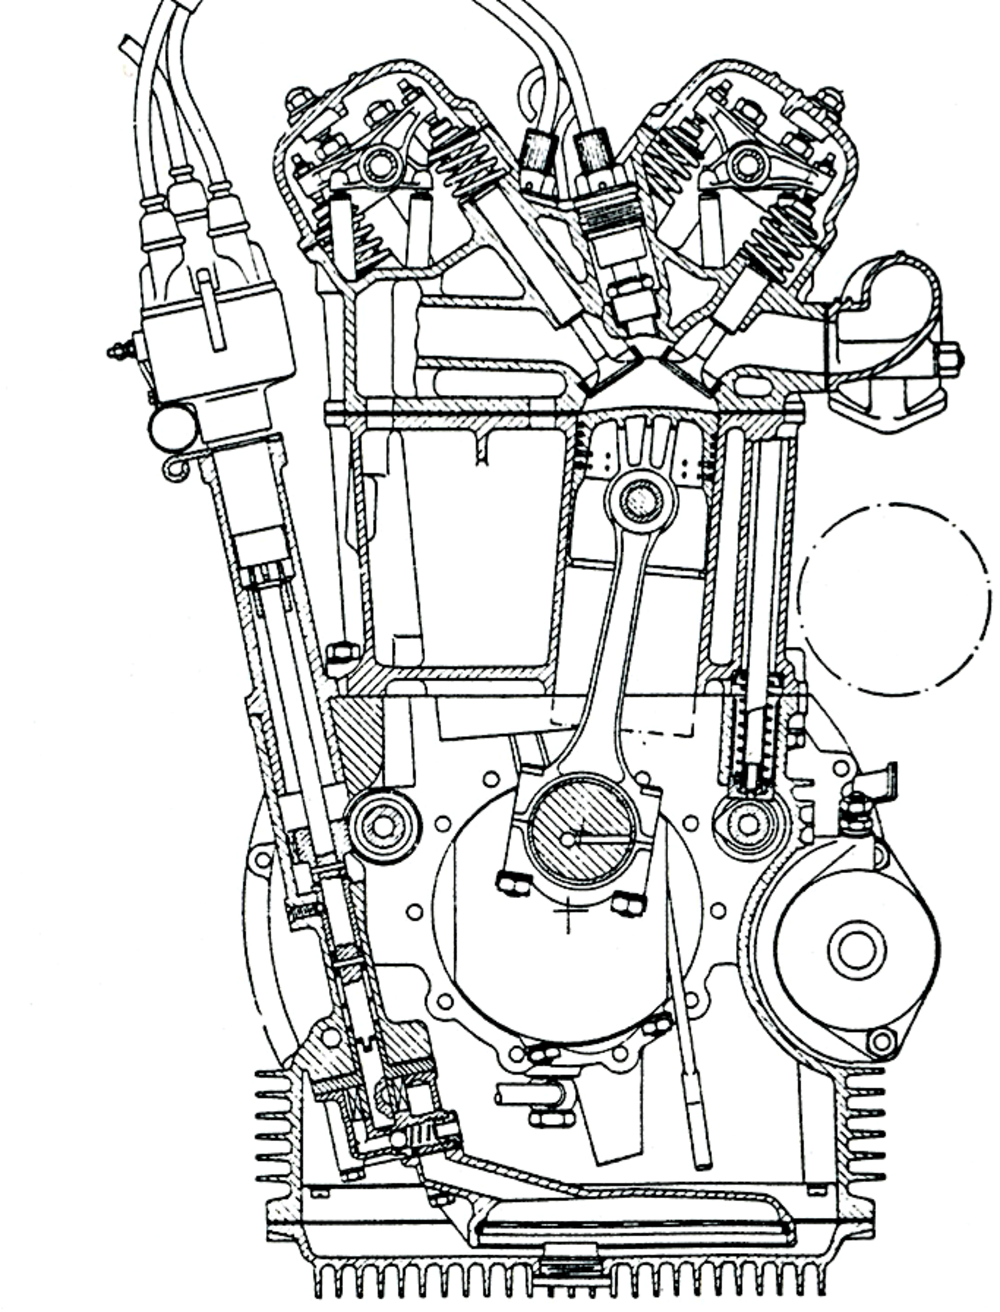 Per decenni la Lancia ha costruito ottimi motori a V stretto (qui &egrave; mostrato in sezione quello della Appia). &Egrave; stata l&rsquo;unica casa al mondo ad adottare questa architettura, fino alla comparsa, molto tempo dopo, dei Volkswagen della serie VR